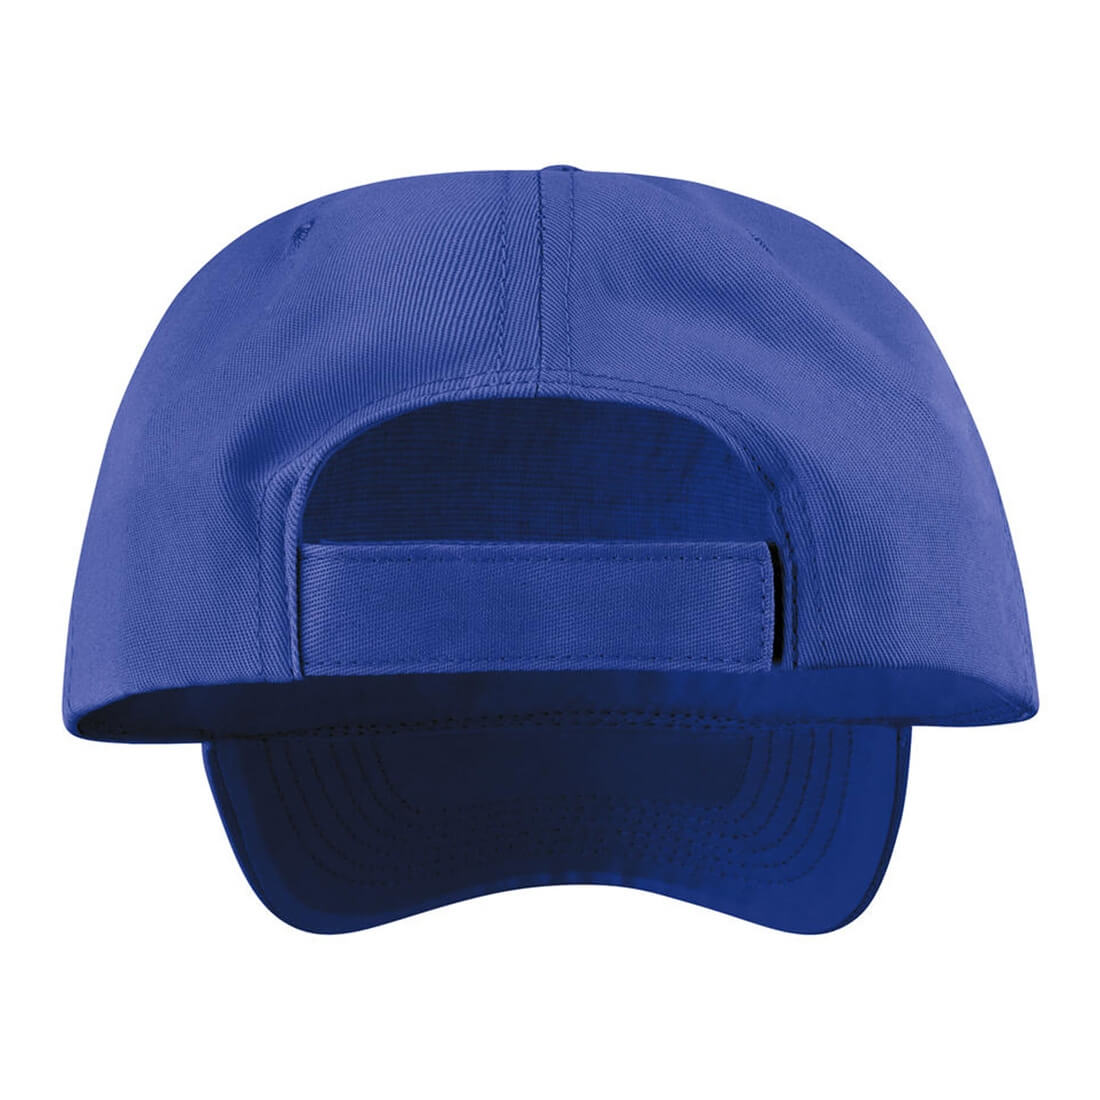 Memphis 6-Panel Low Profile Cap - Les vêtements de protection